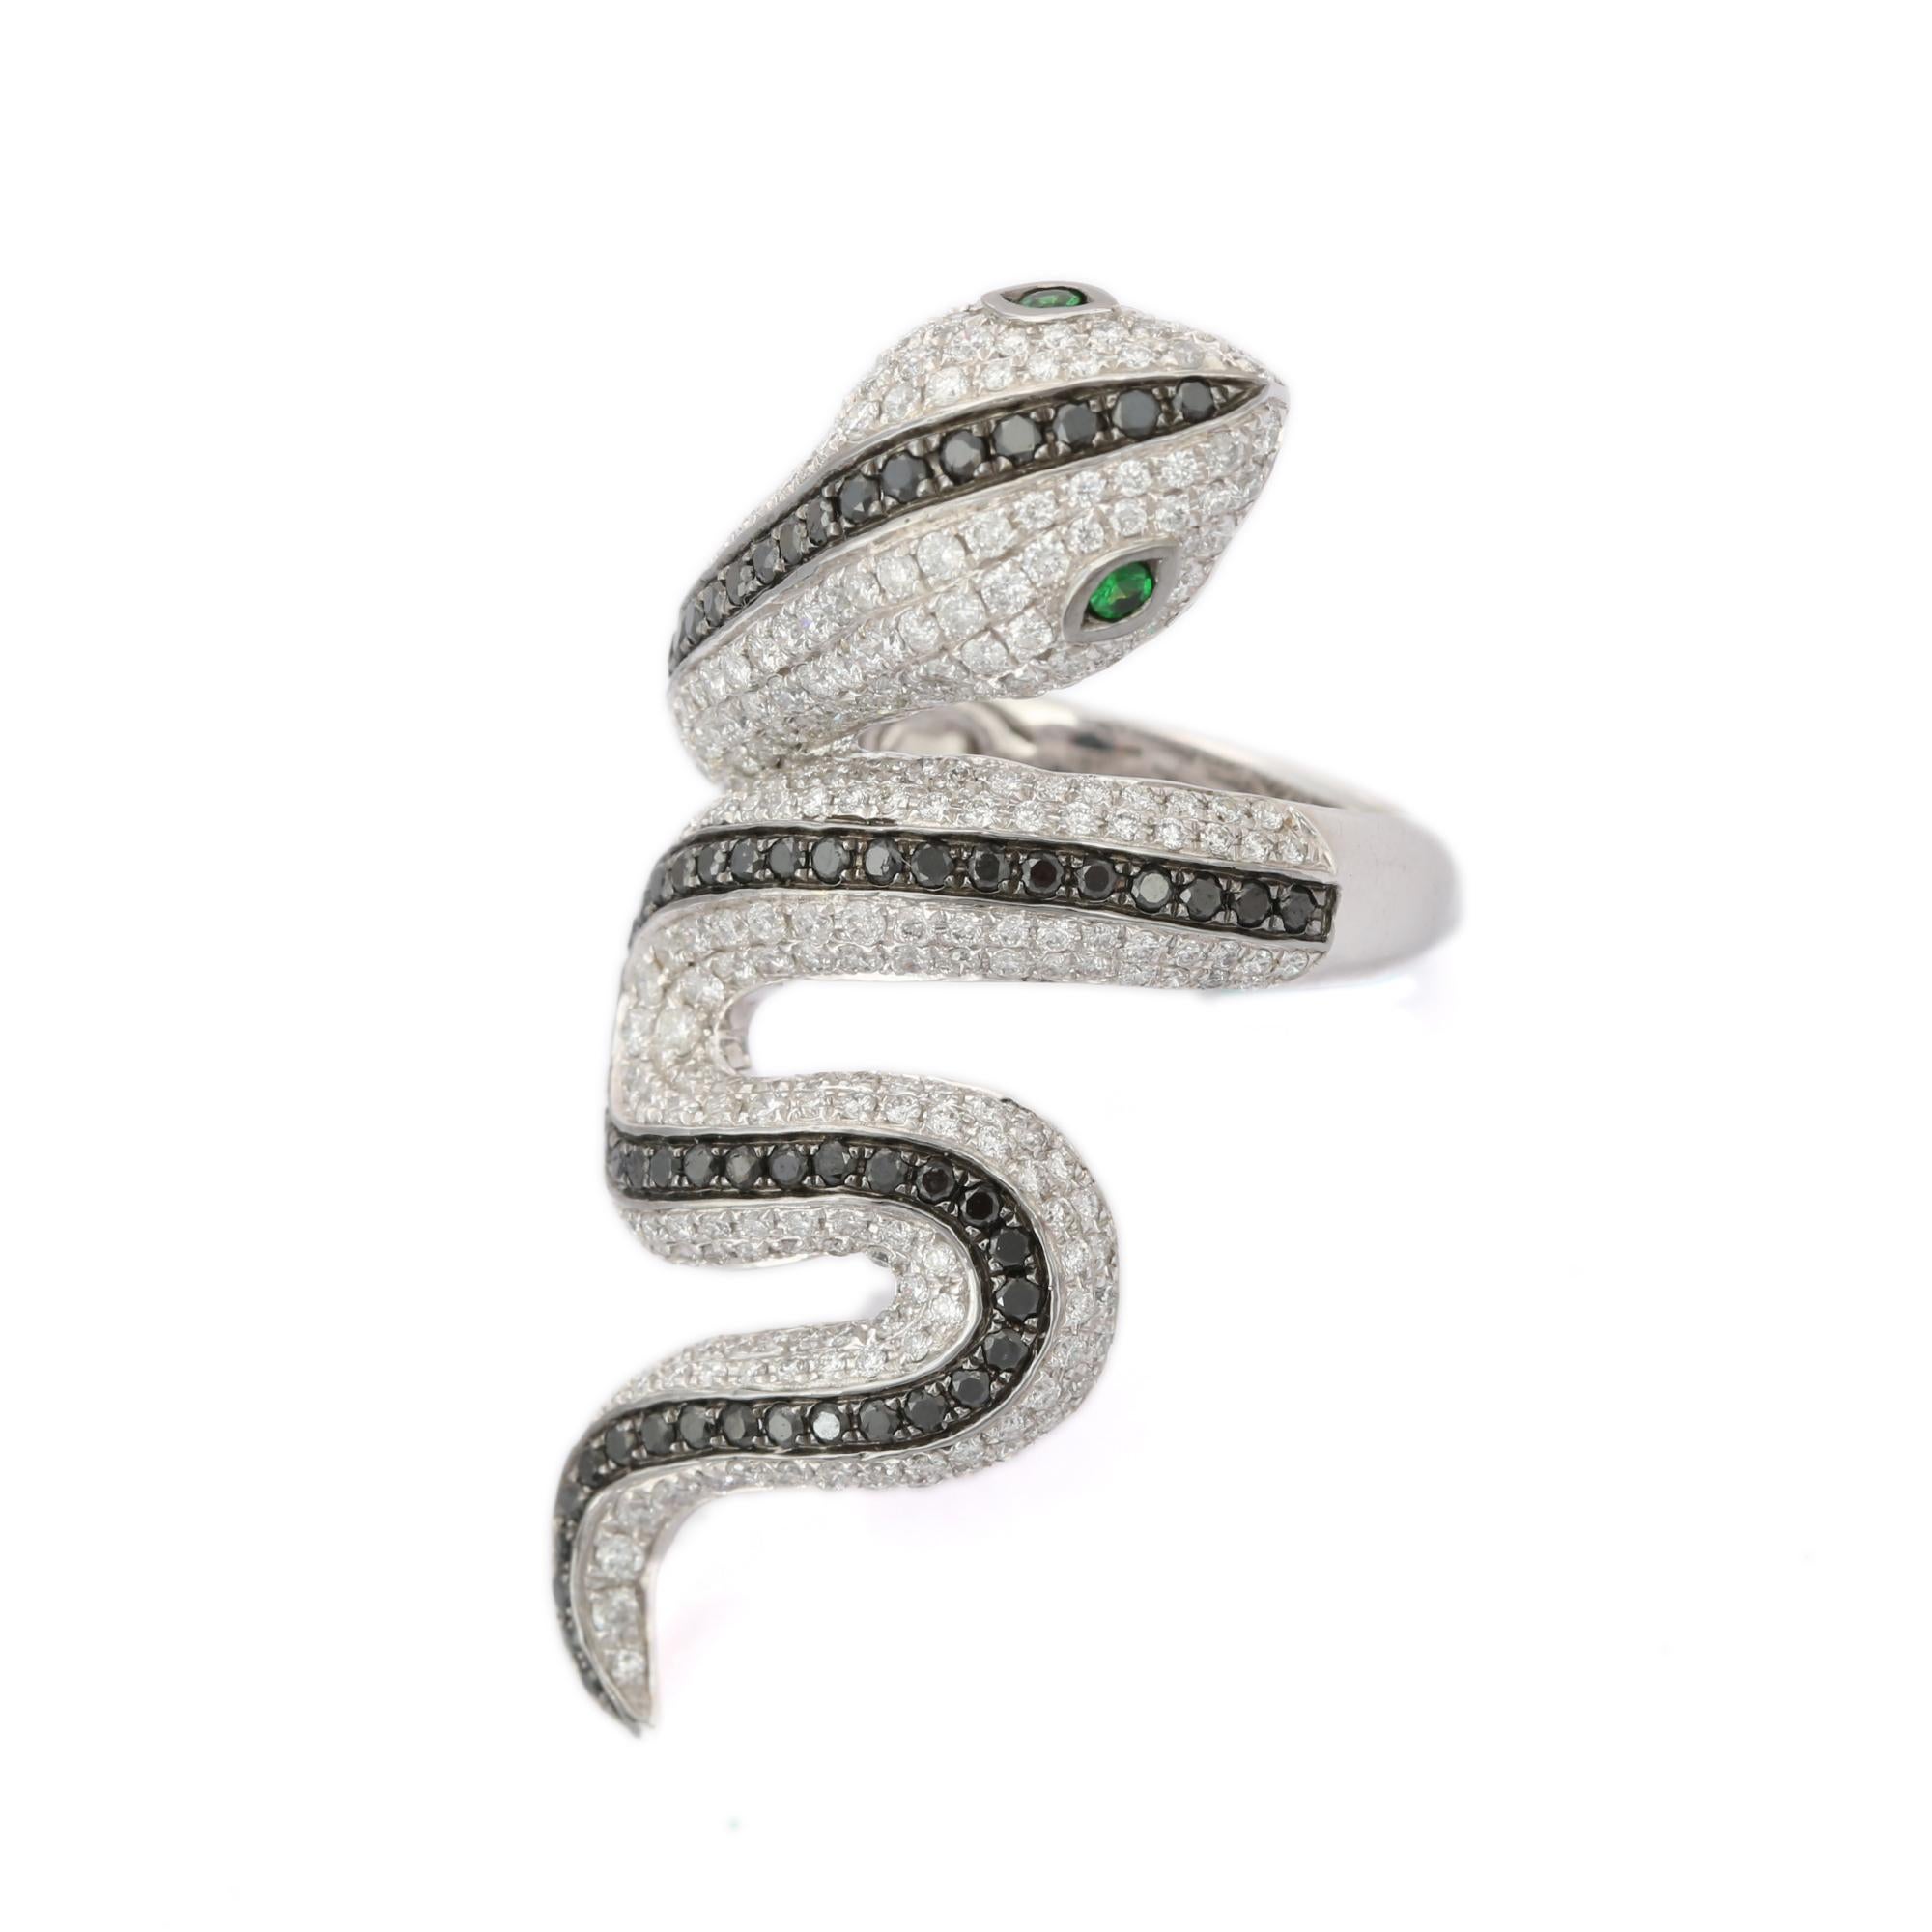 For Sale:  Tsavorite Eye and Diamond Snake Coil Ring in 18k Solid White Gold 6